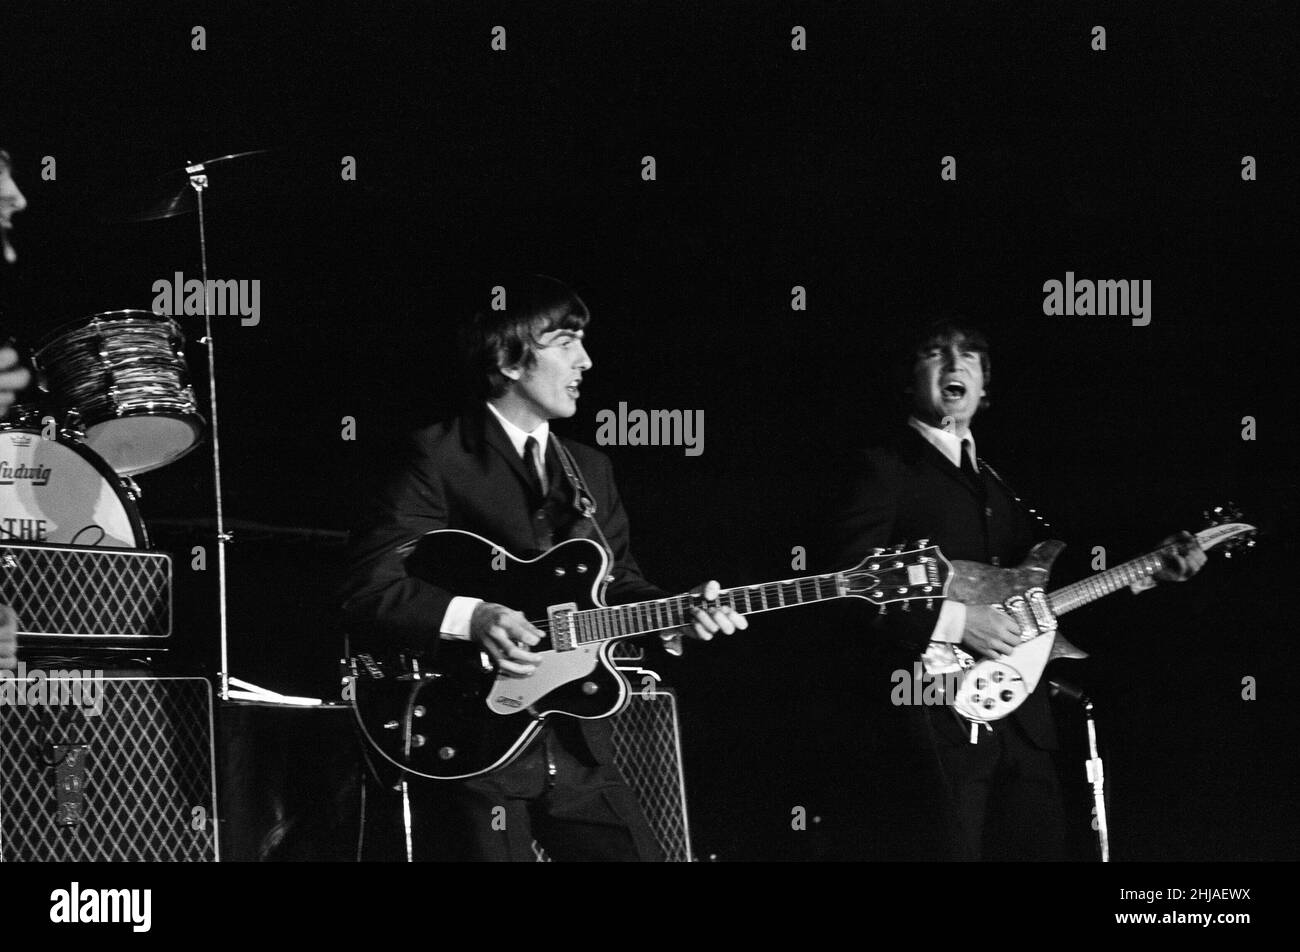 The Beatles 1964 Summer of the United States and Canada, leur première tournée américaine. George Harrison et John Lennon se sont produits sur scène lors d'un des concerts du groupe.Août 1964. Banque D'Images